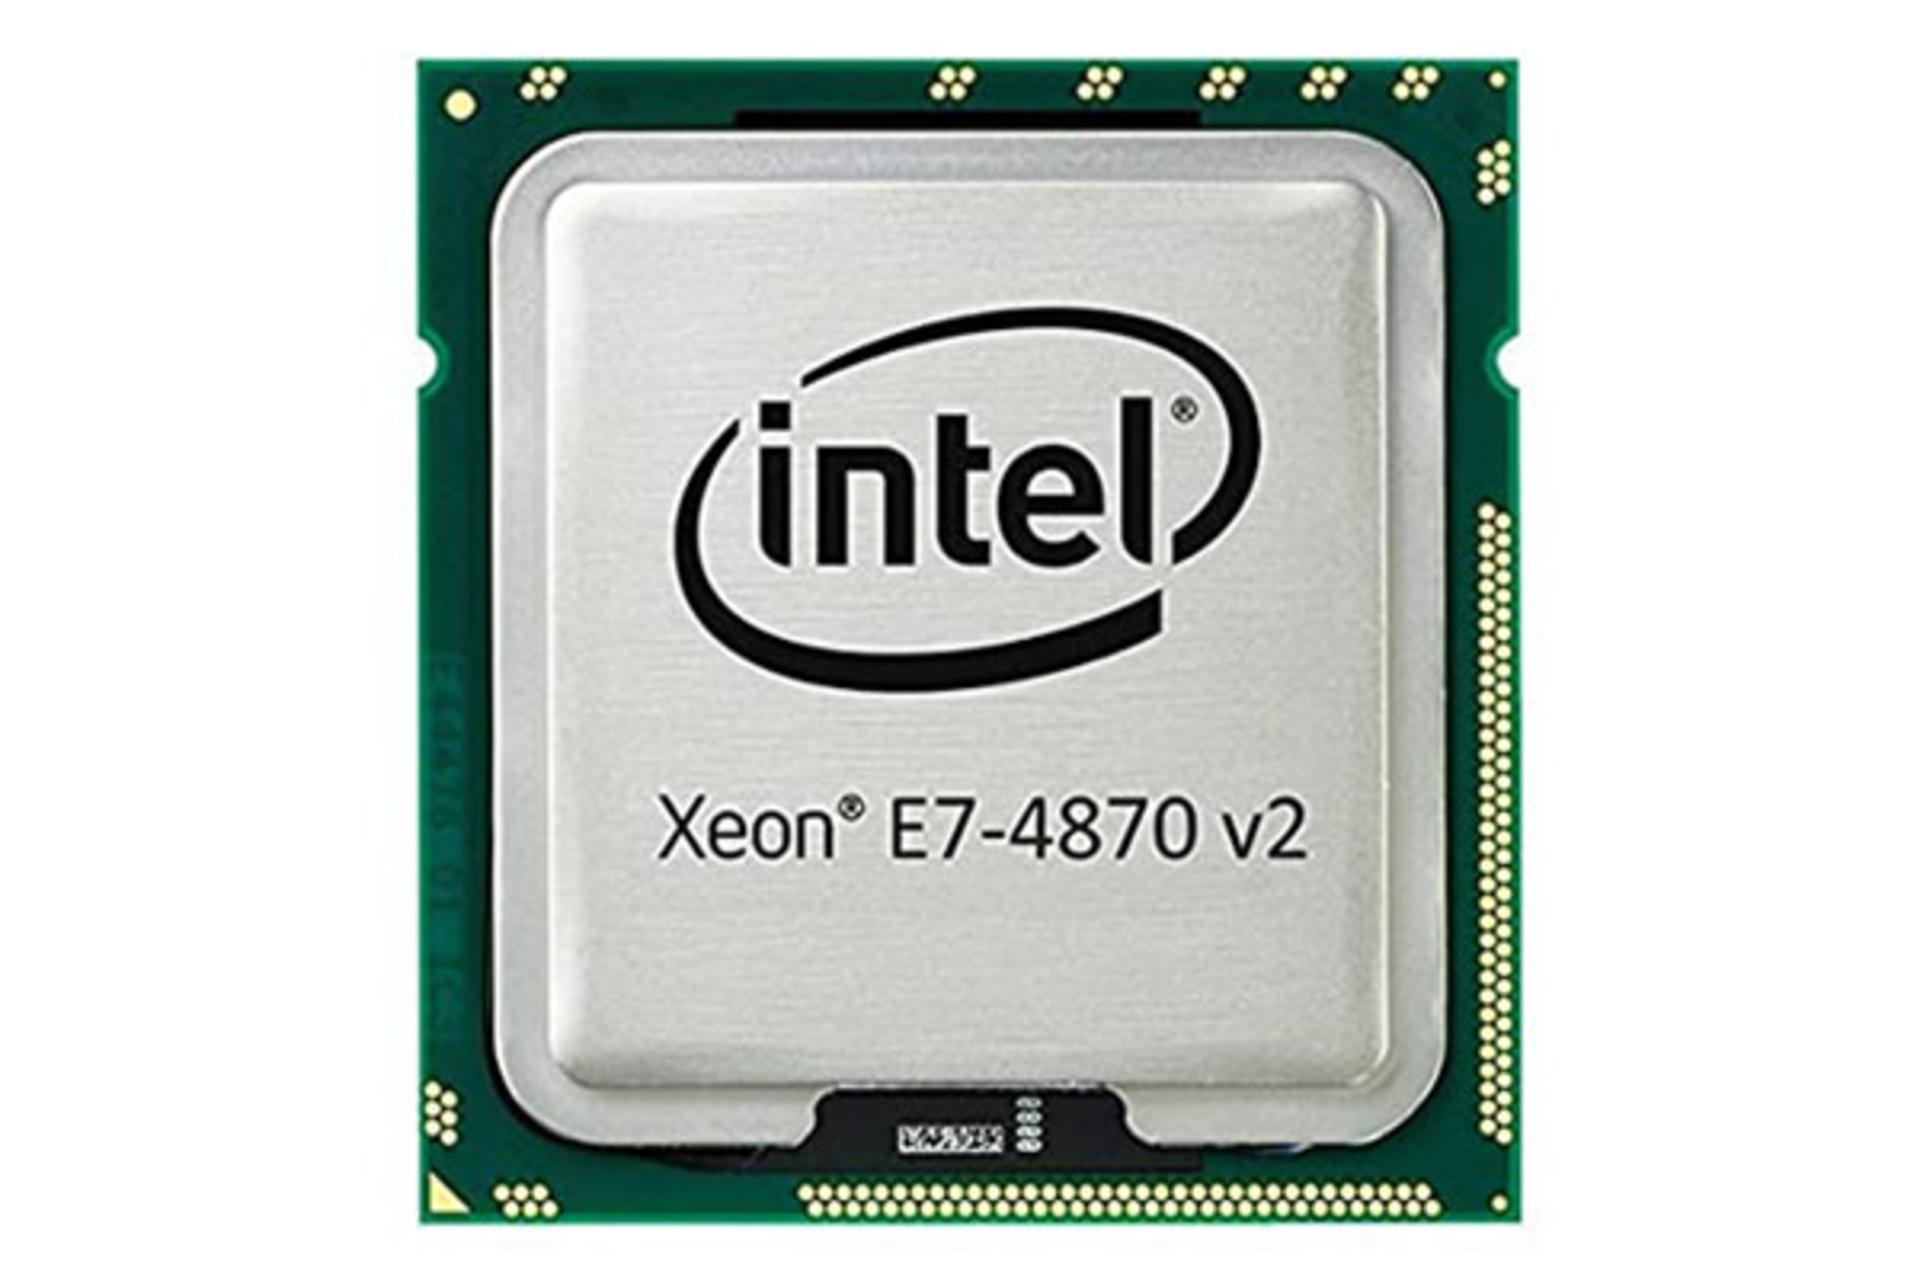 Intel Xeon E7-4870 v2 / اینتل Xeon E7-4870 v2